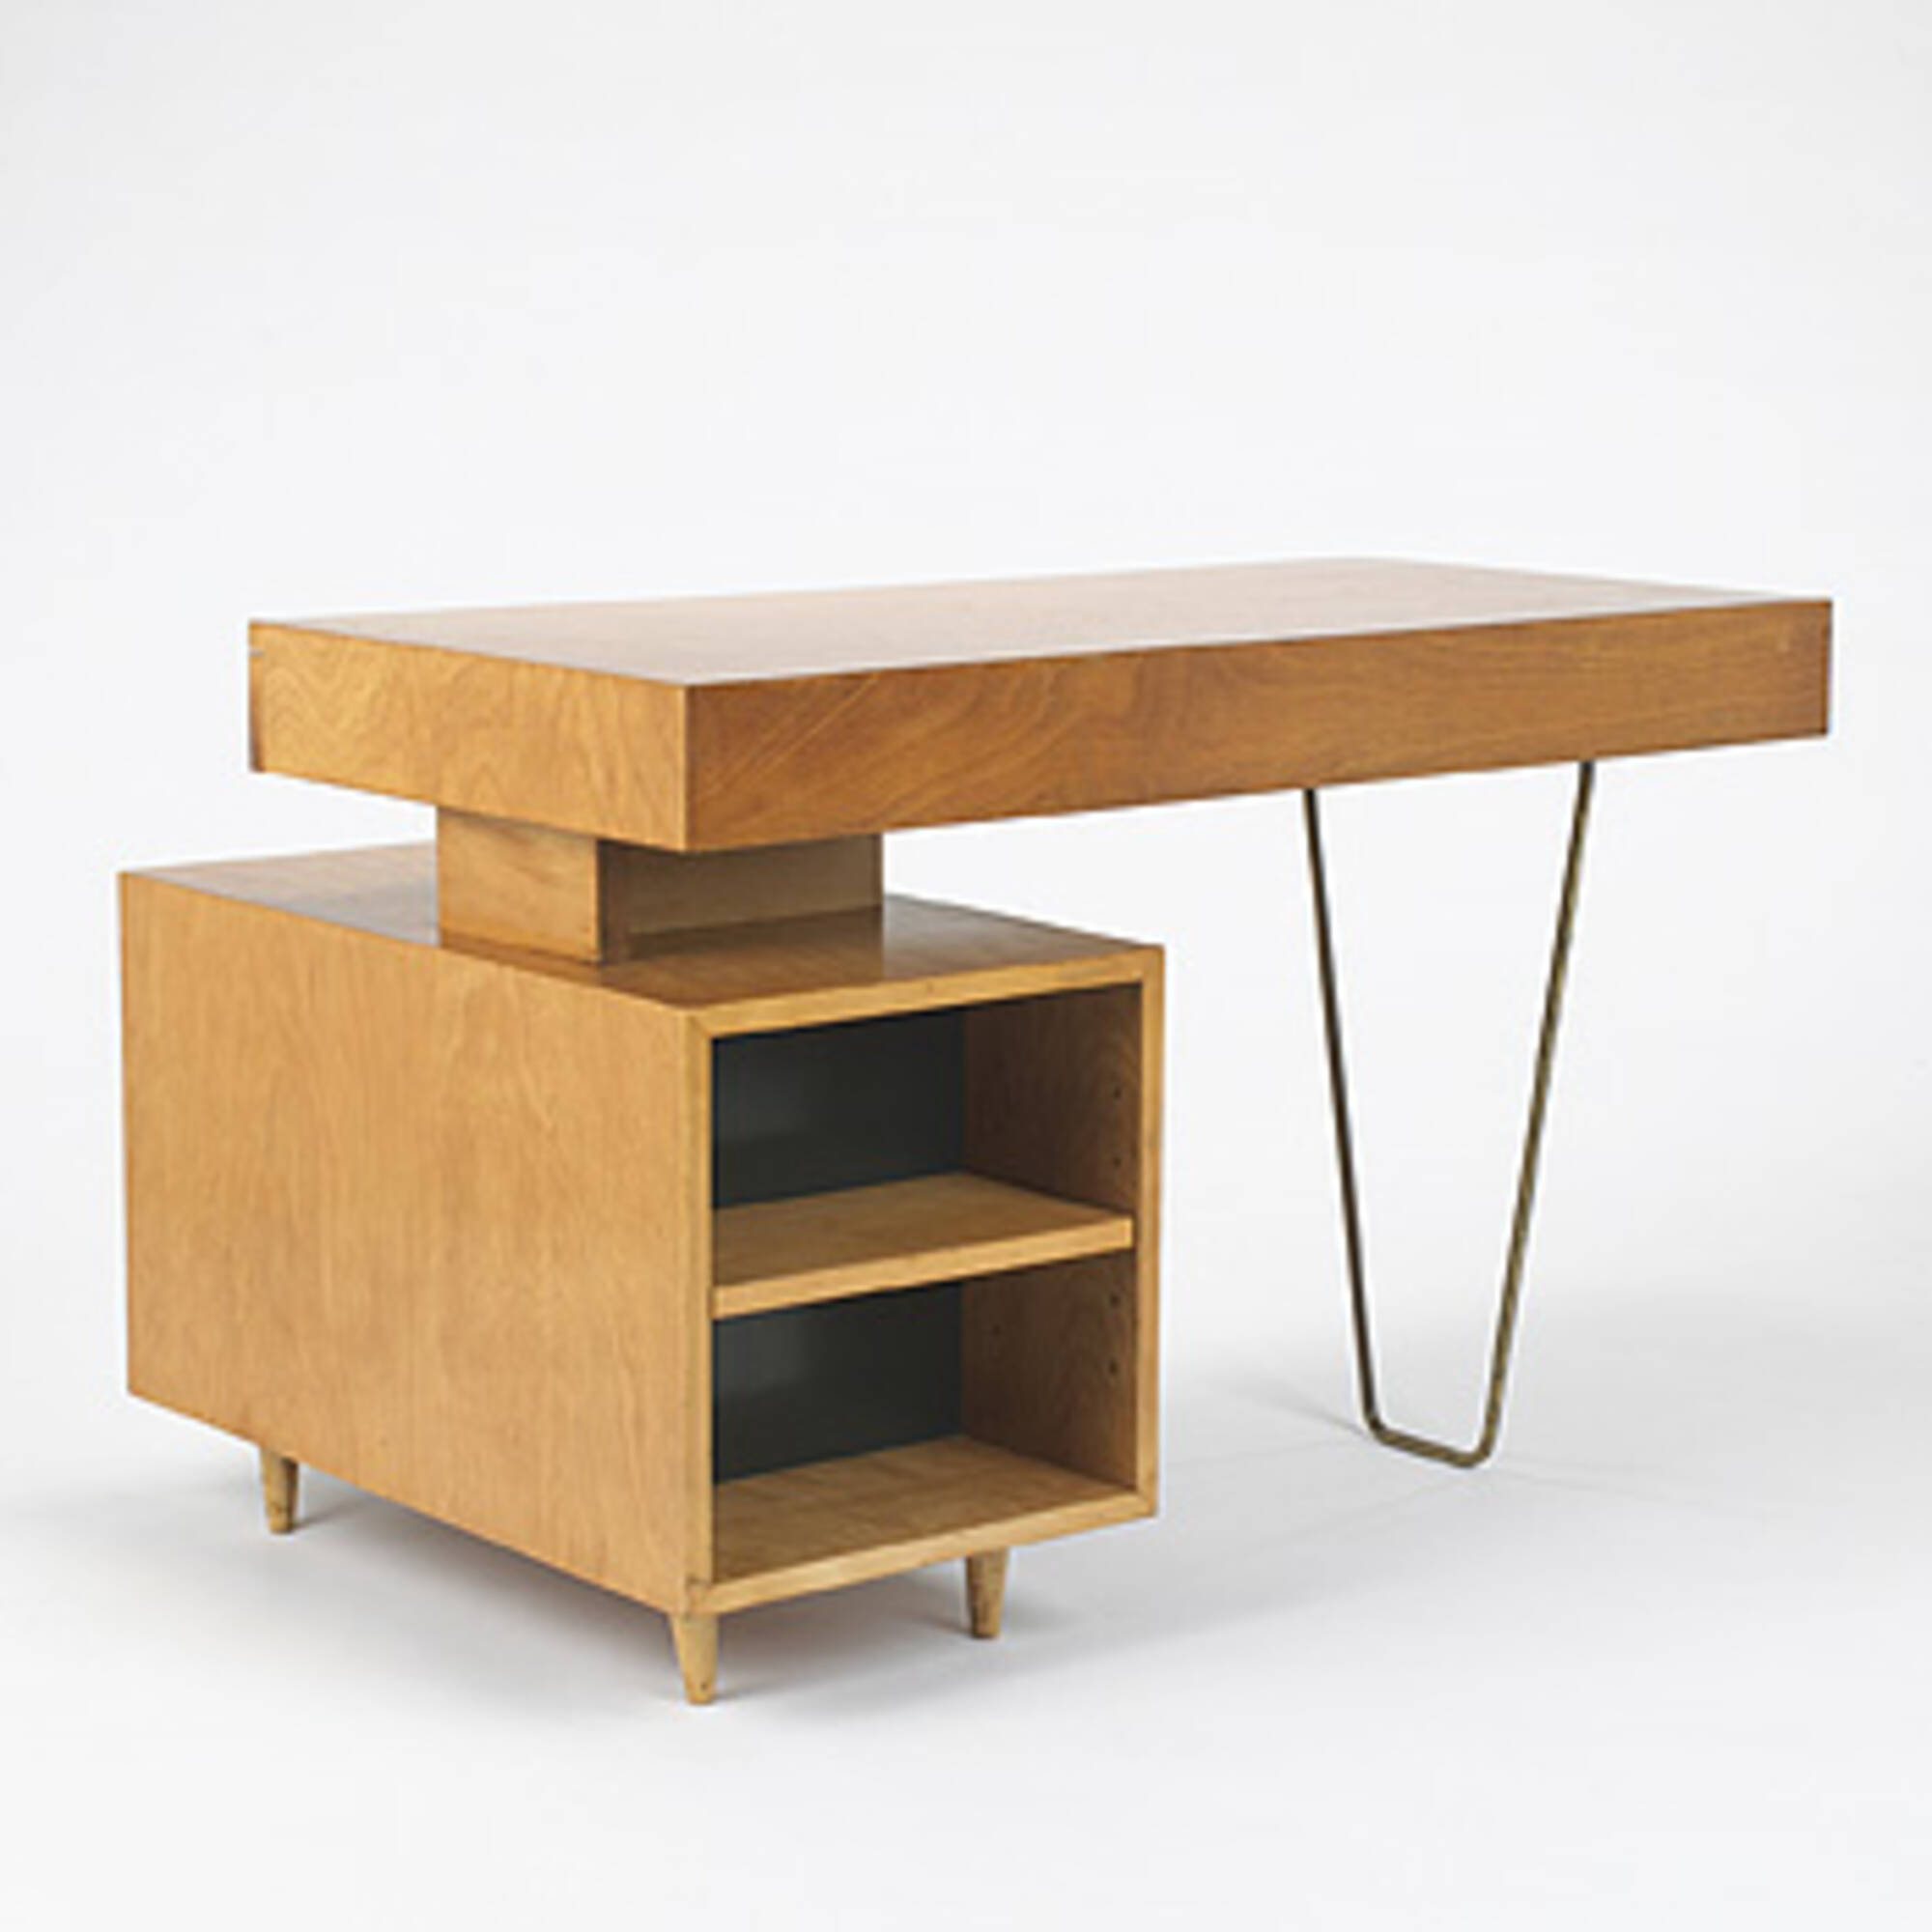 428: SAMUEL GLASER, custom desk